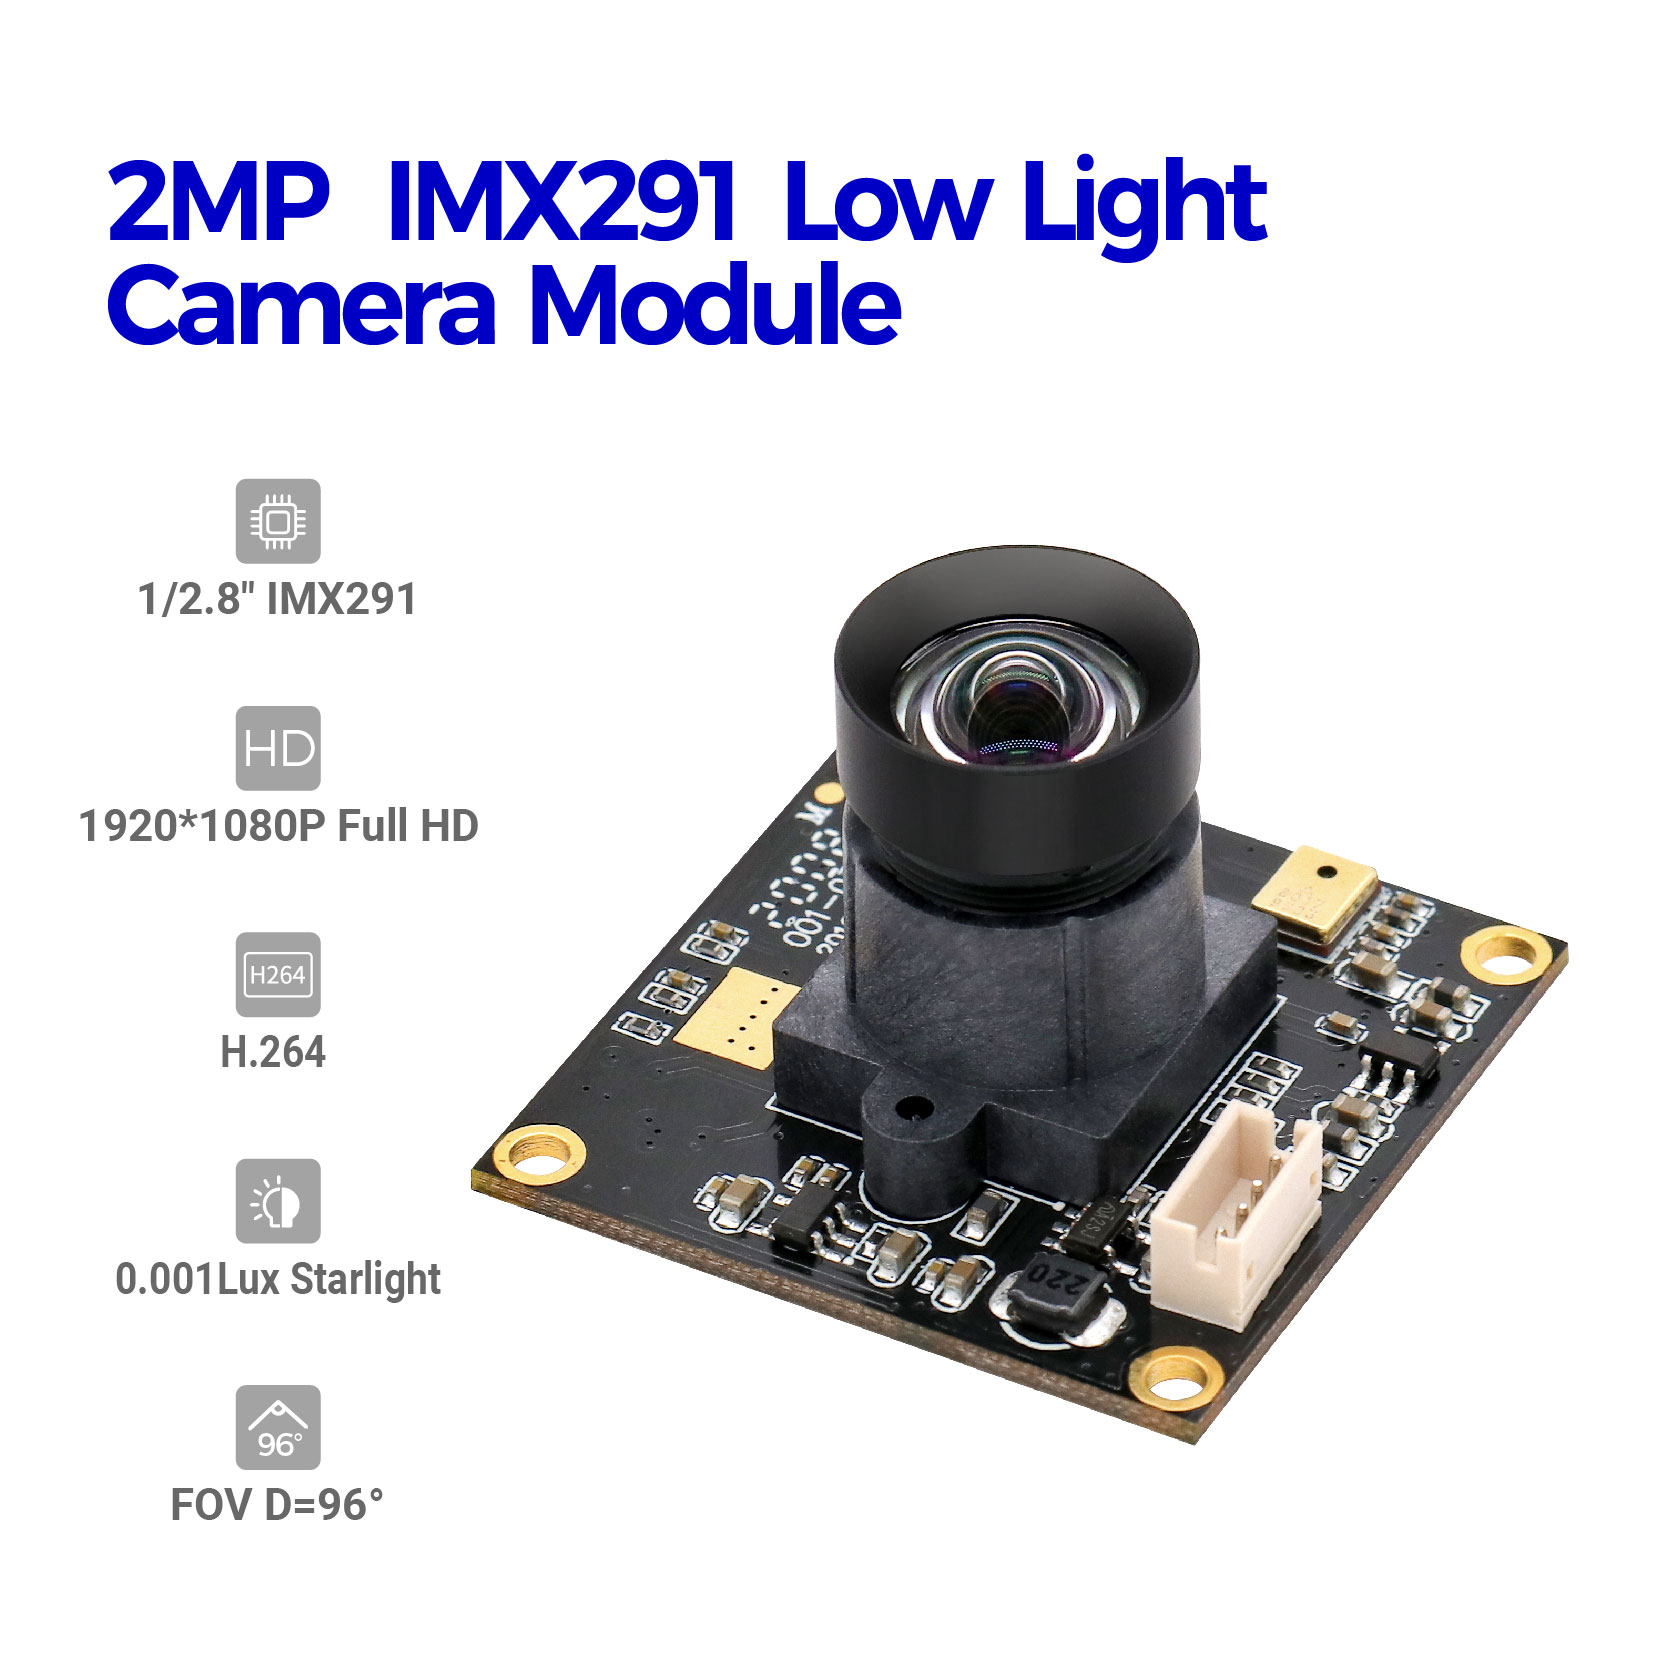 कम रोशनी वाला कैमरा मॉड्यूल स्टार-लाइट नाइट विजन फीचर्ड इमेज